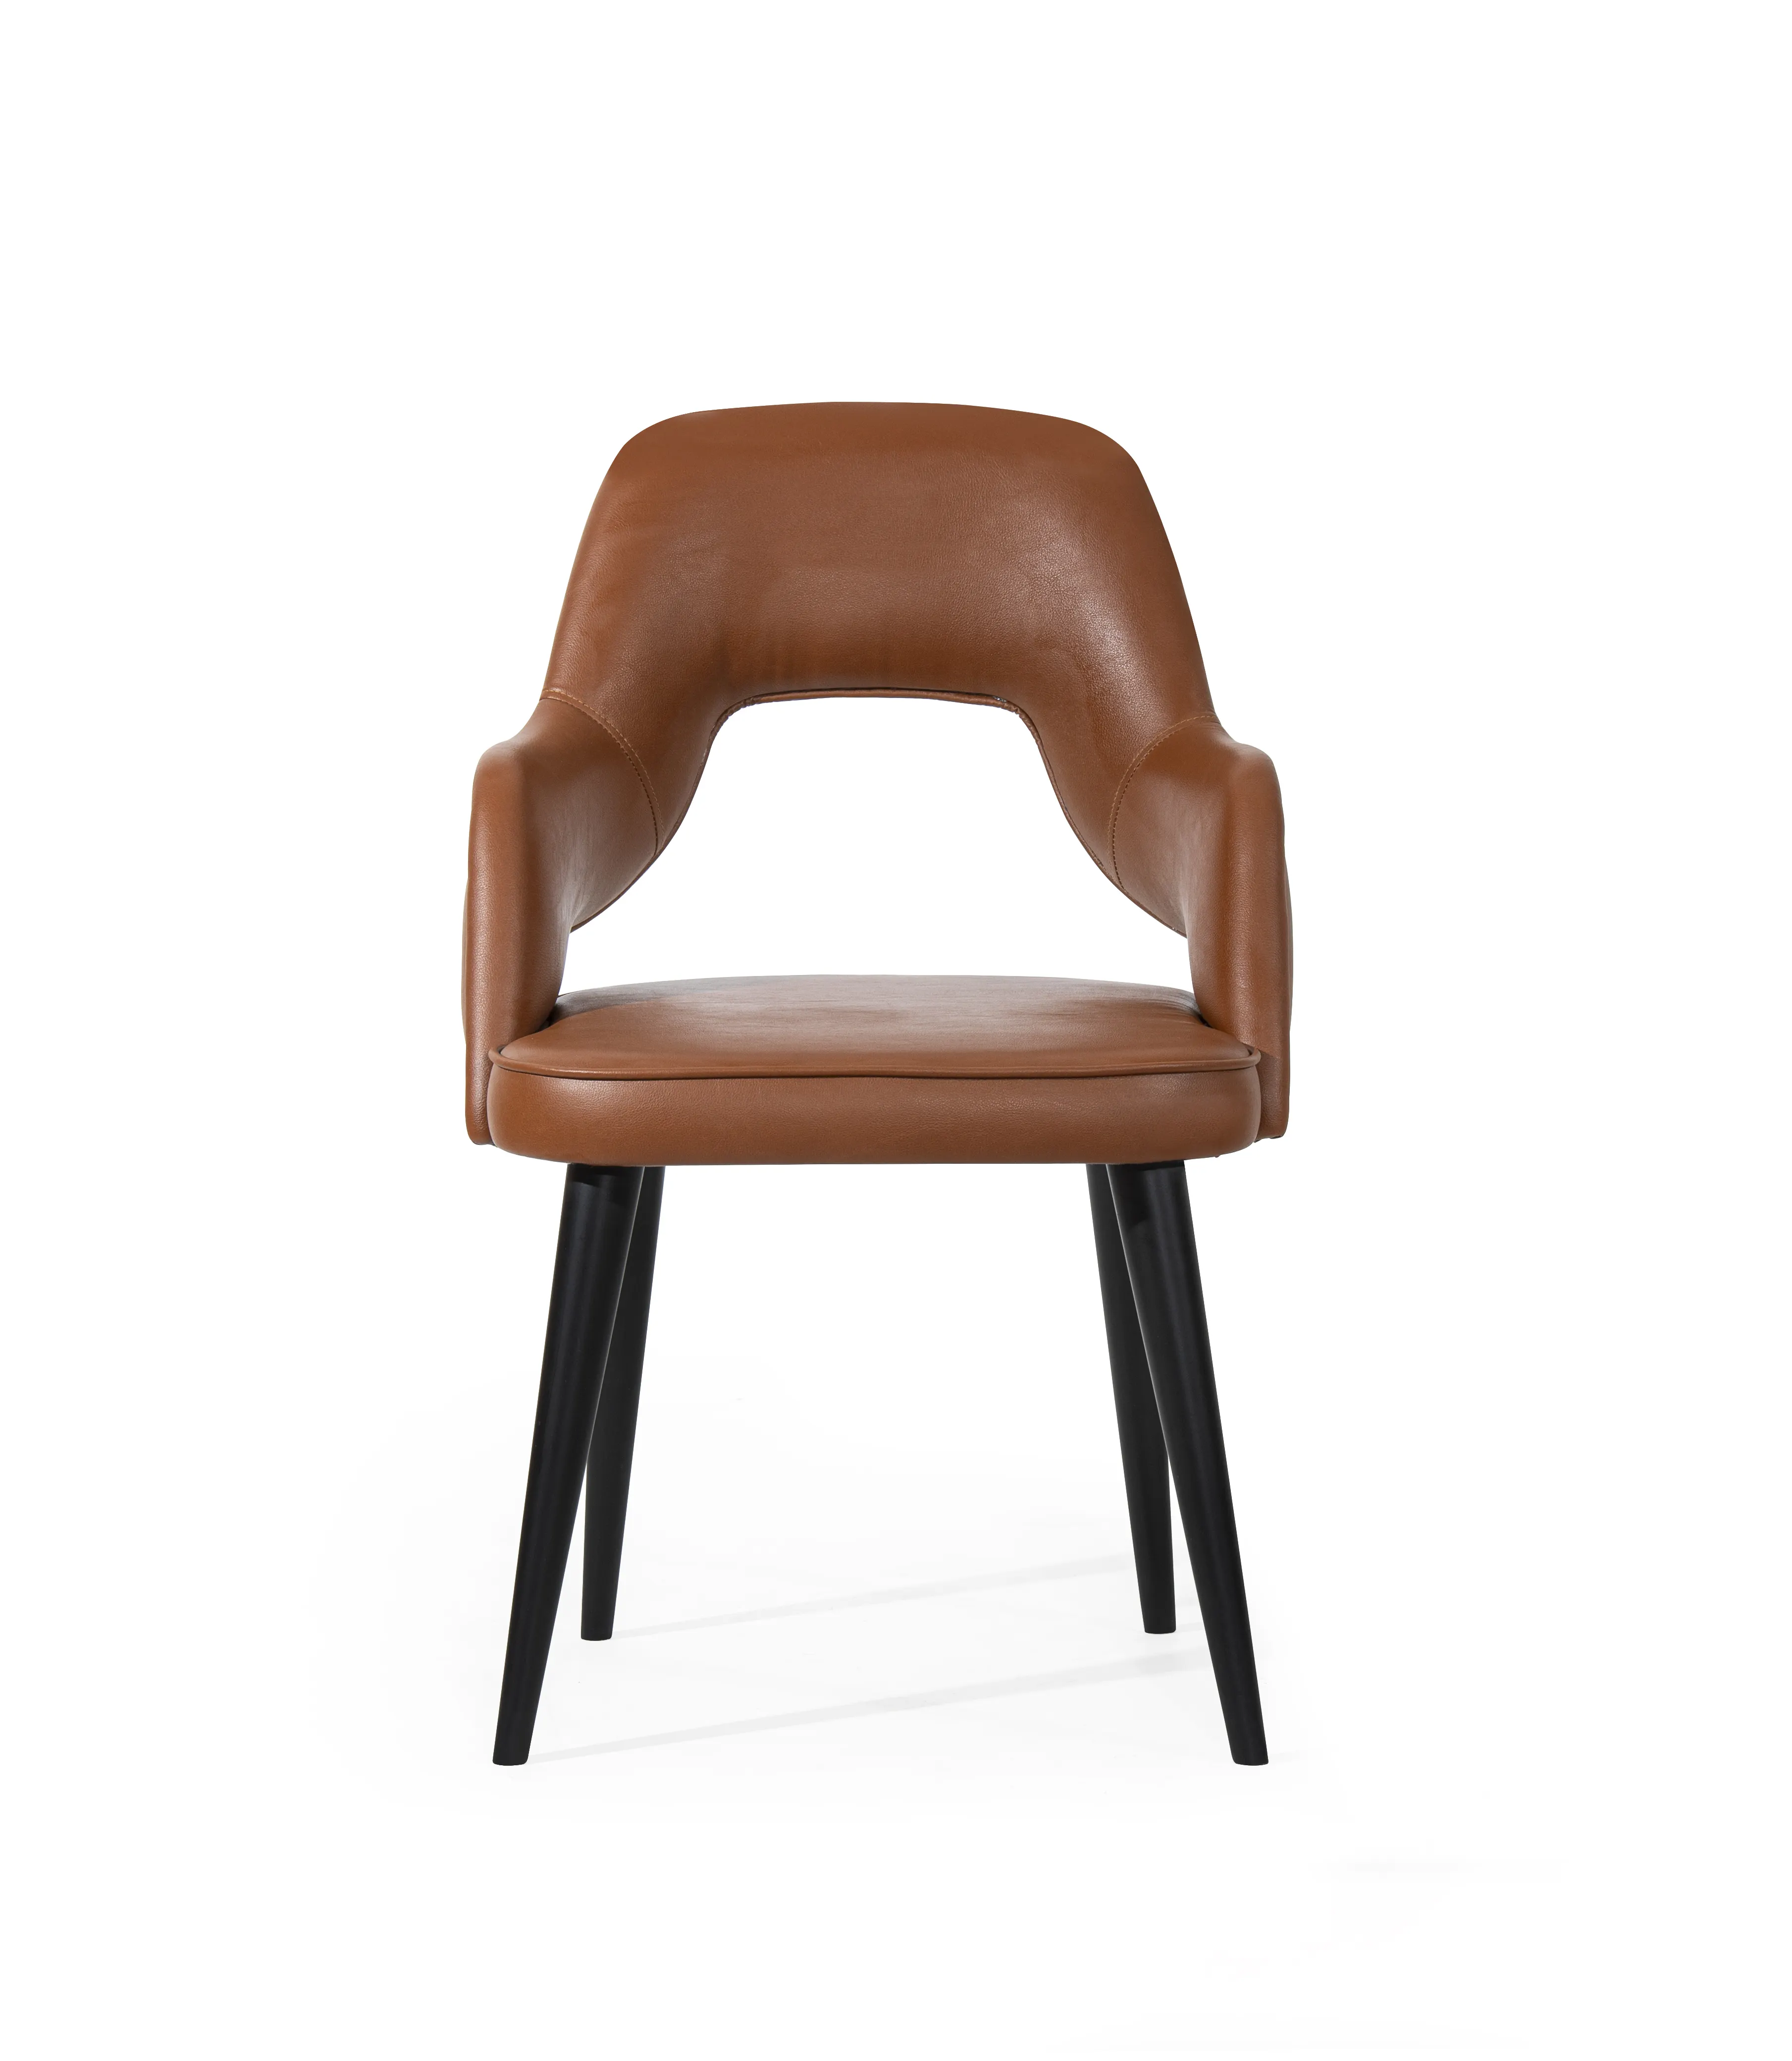 Ayak montaj plastik ayaklar için Metal sandalyeler ahşap açık siyah OEM ambalaj odası için Modern mobilya